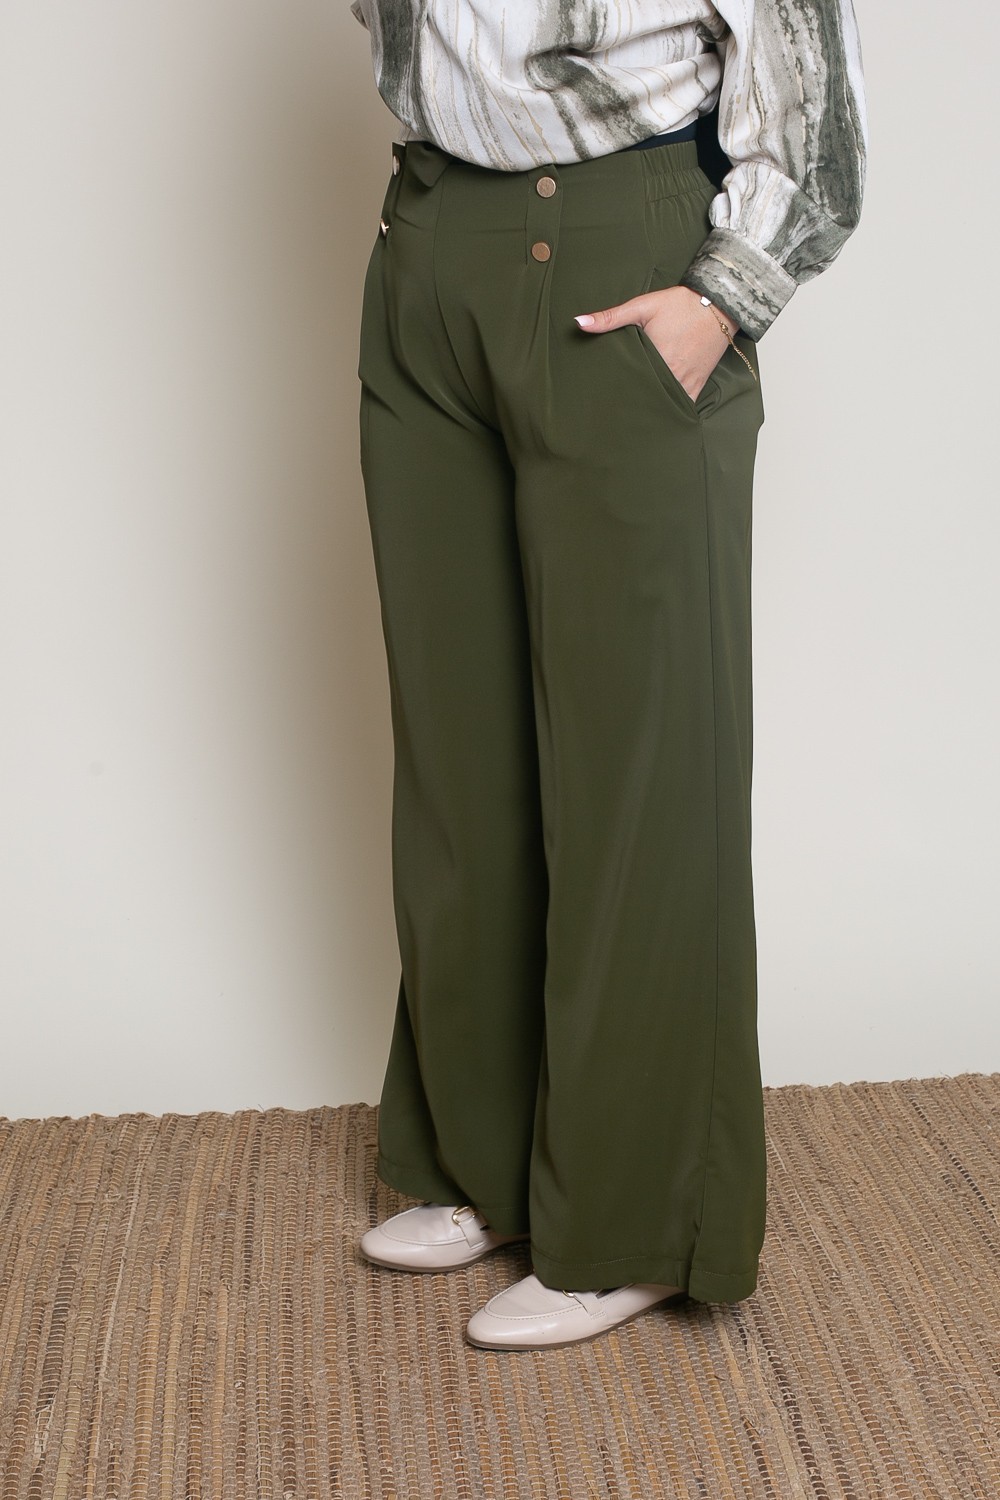 pantalon large habillé pour femme boutique musulmane moderne